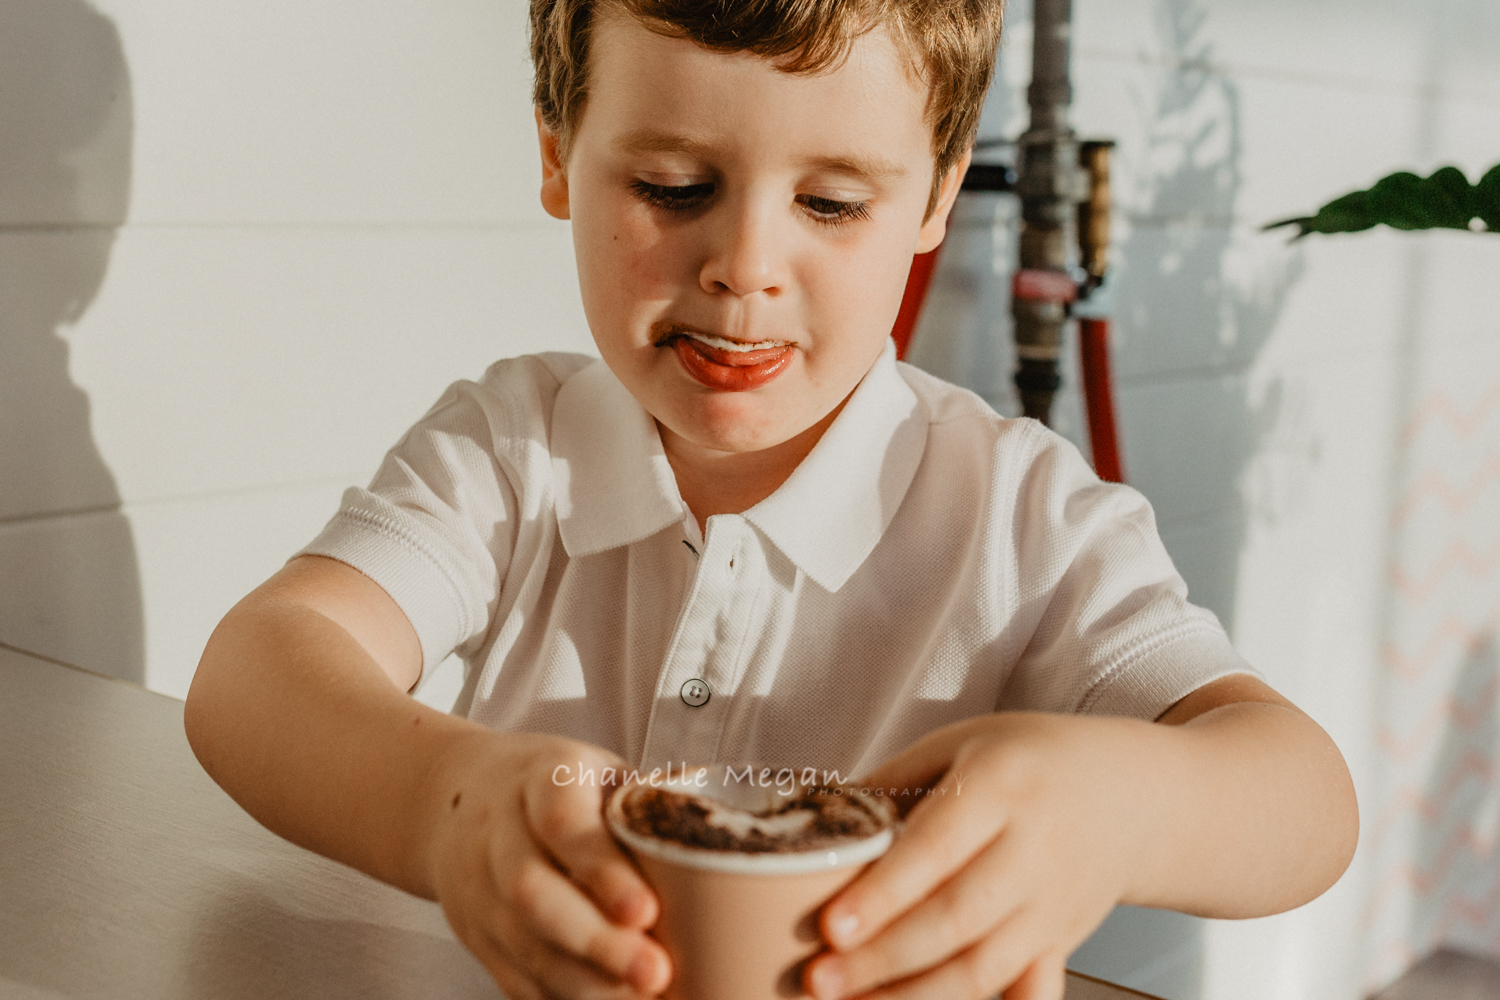 Perth children's photographer: Chanelle Megan Photography captures a lifestyle portrait of a boy